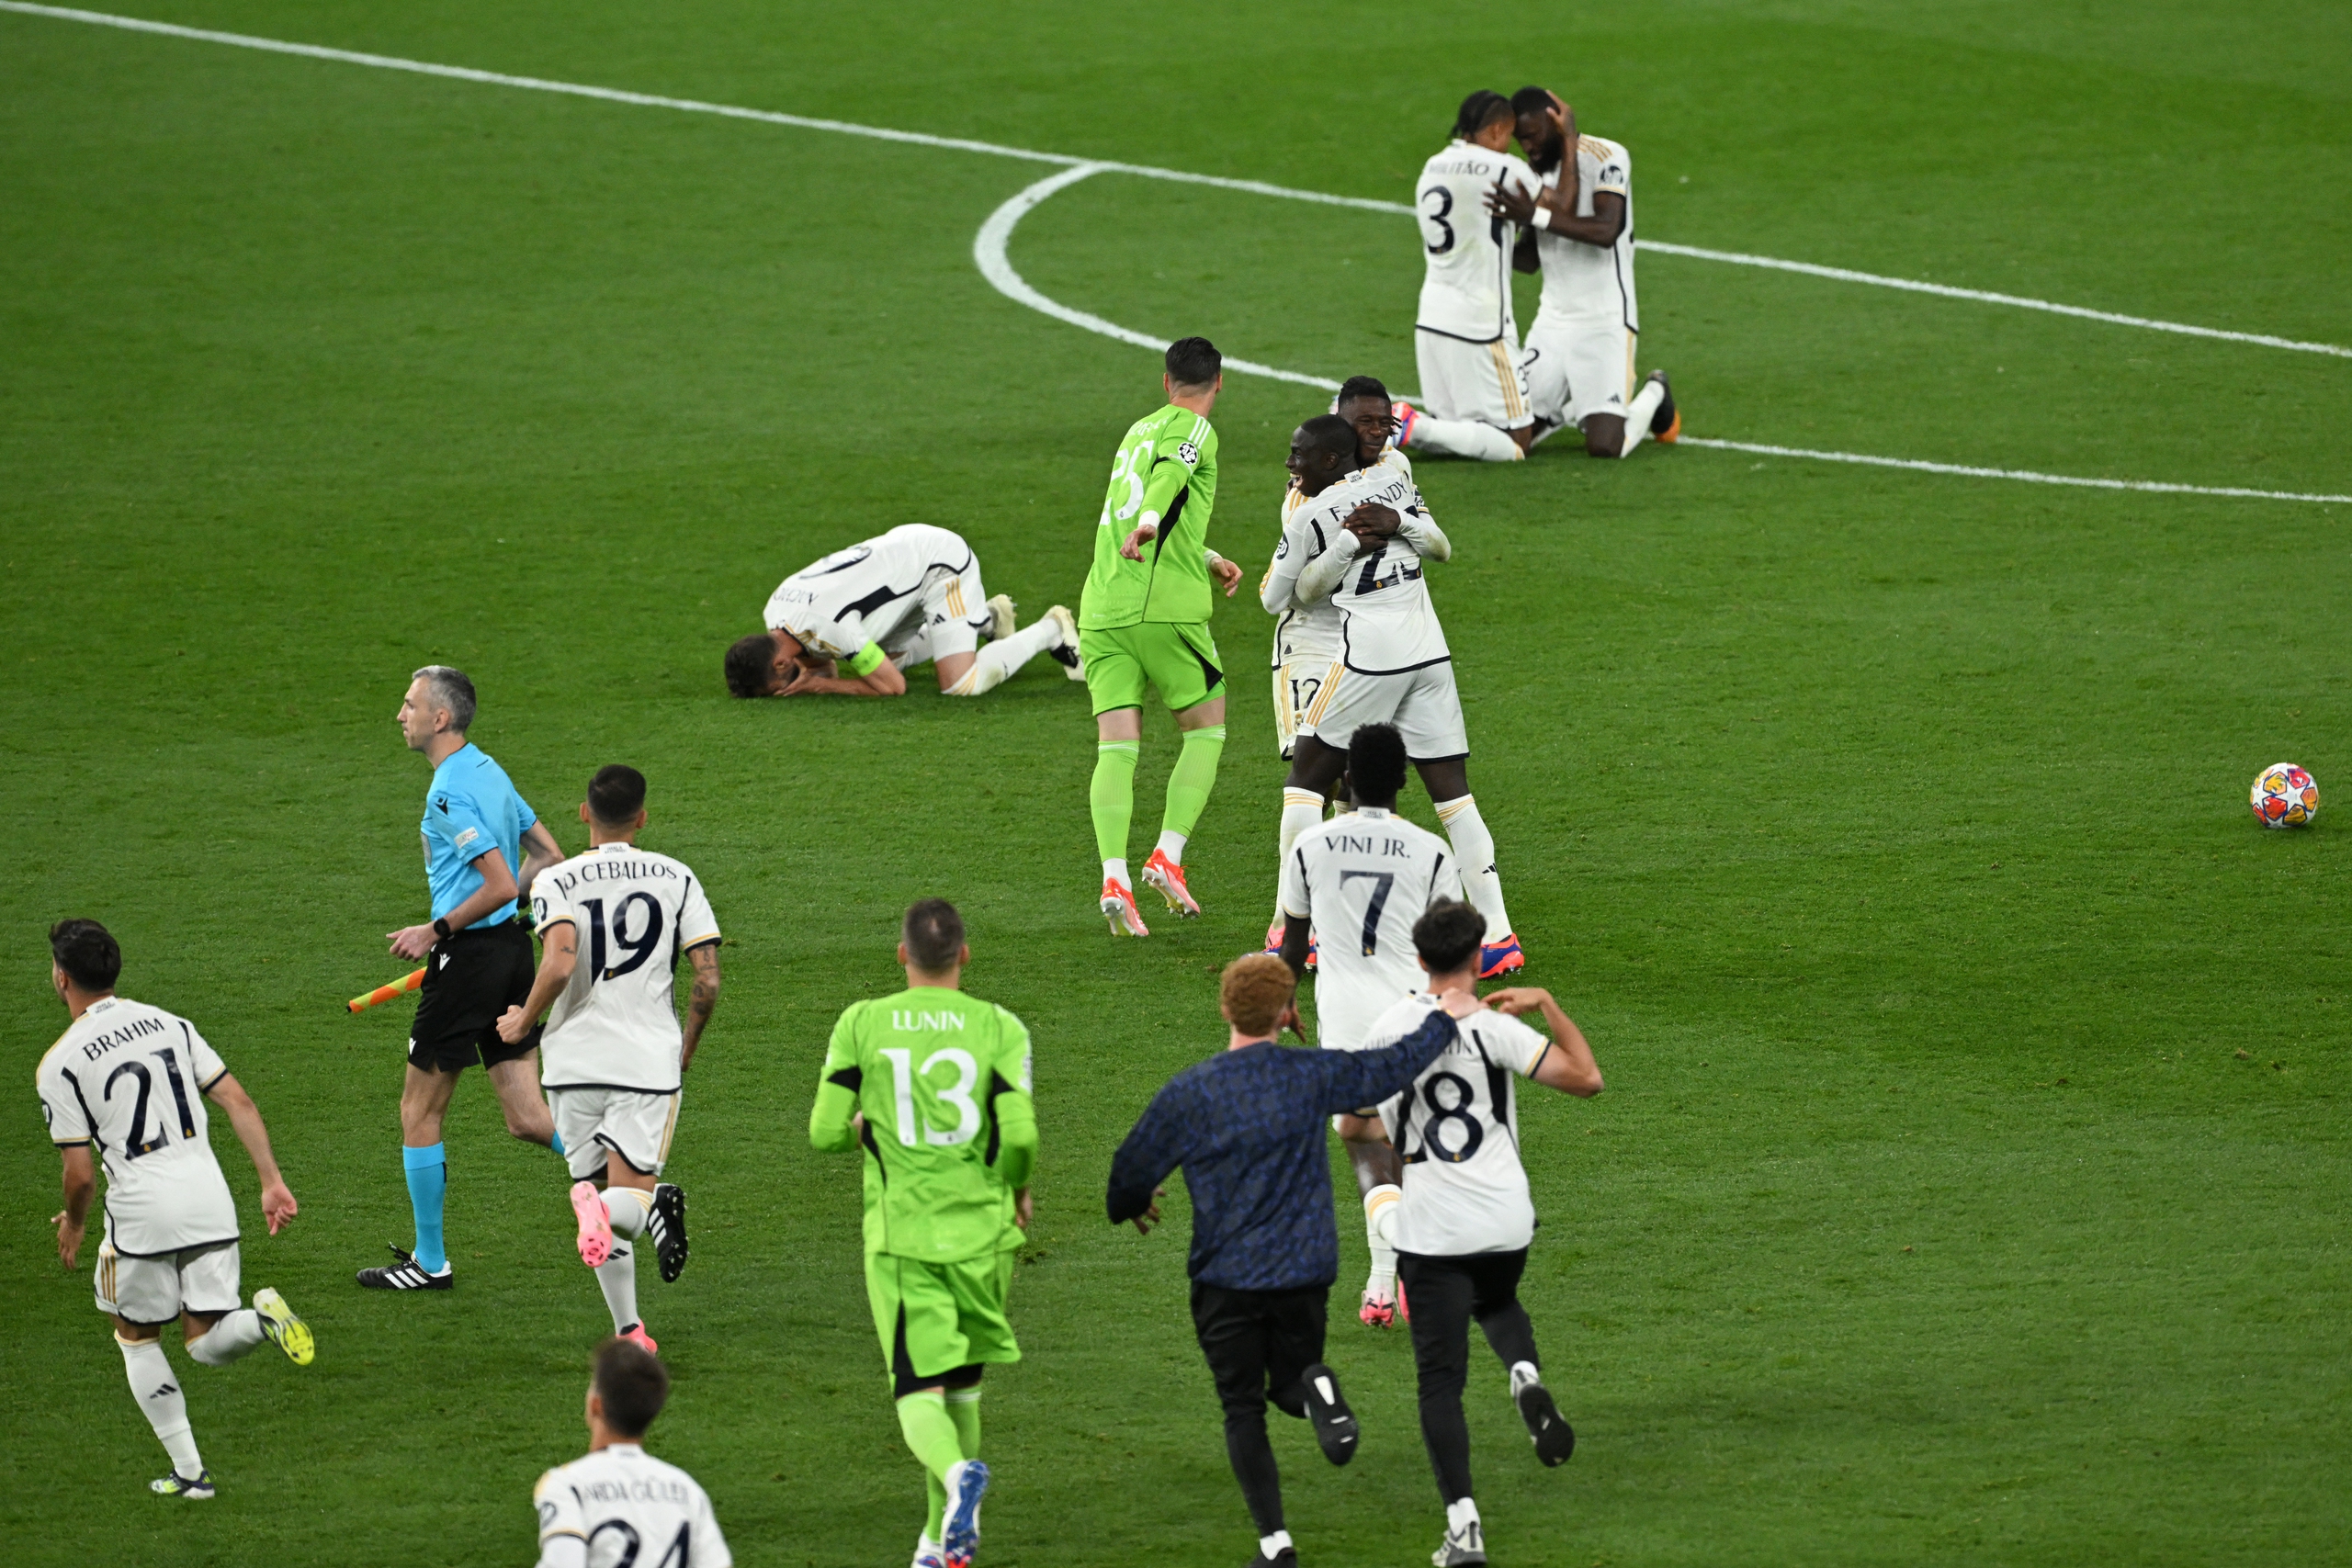 Lần thứ 15 đăng quang, Real Madrid tiếp tục làm bá chủ giải hàng đầu châu Âu- Ảnh 5.